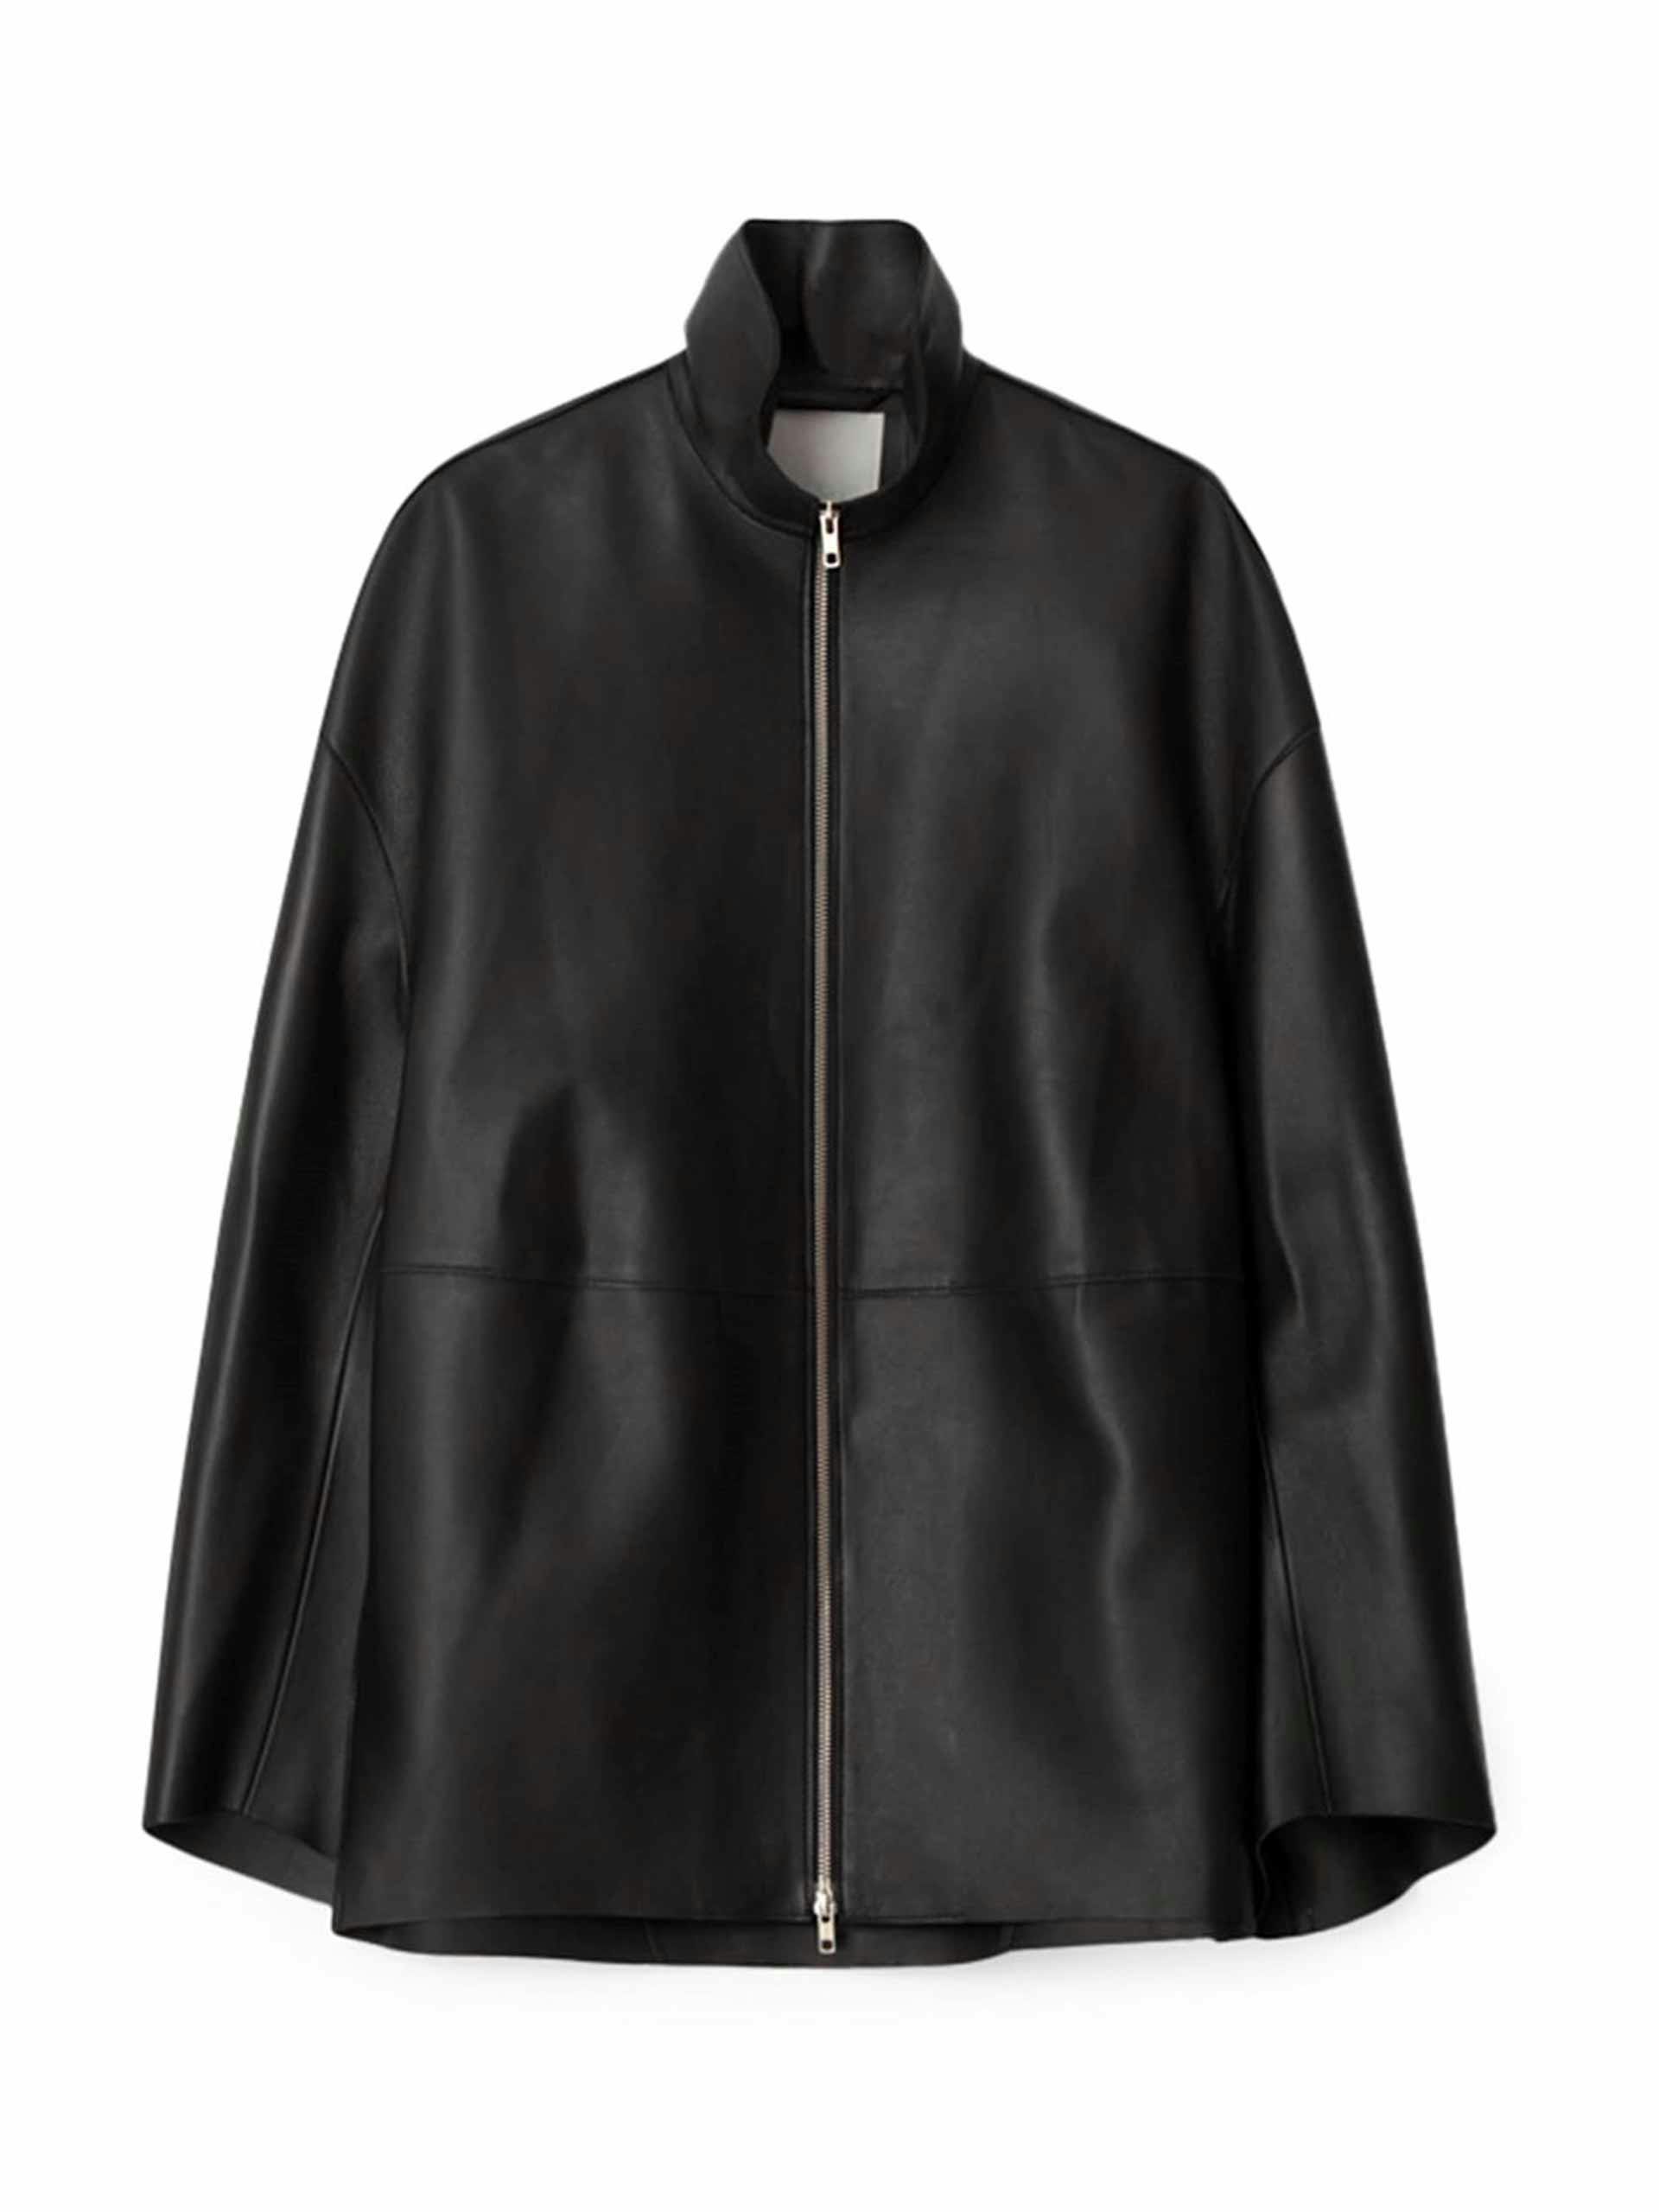 Doublé leather black jacket